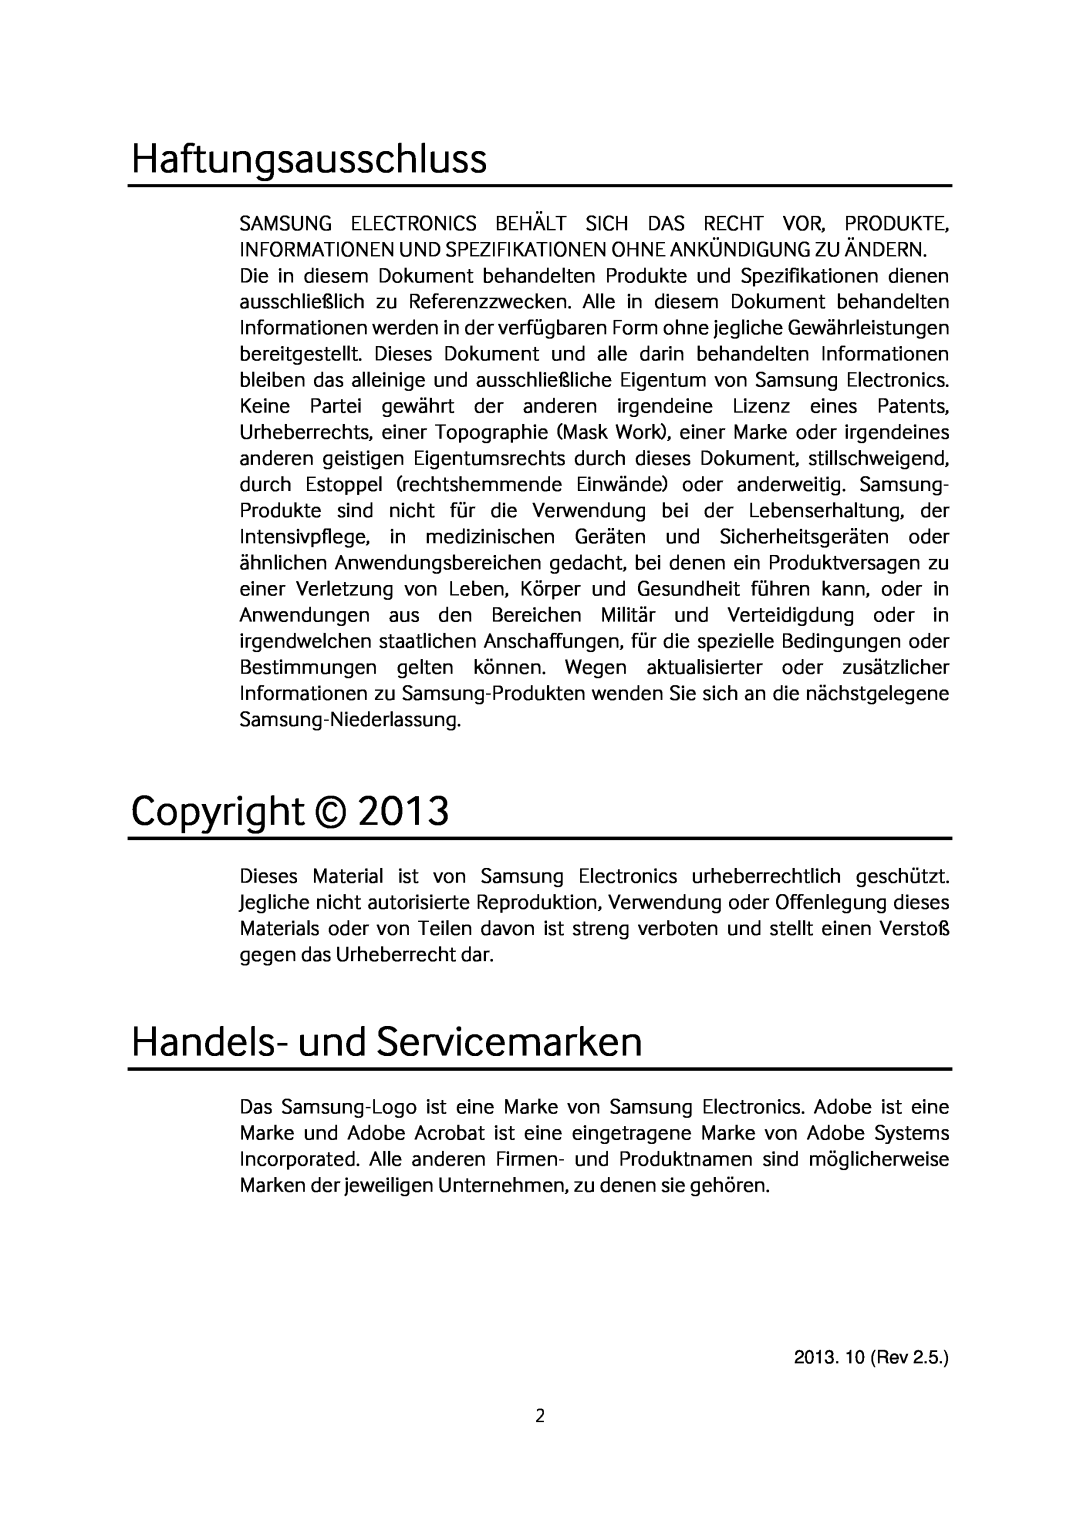 Samsung MZ-7TD120KW, MZ-7TD500BW, MZ-7TD250KW manual Haftungsausschluss, Copyright, Handels- und Servicemarken, 2013. 10 Rev 